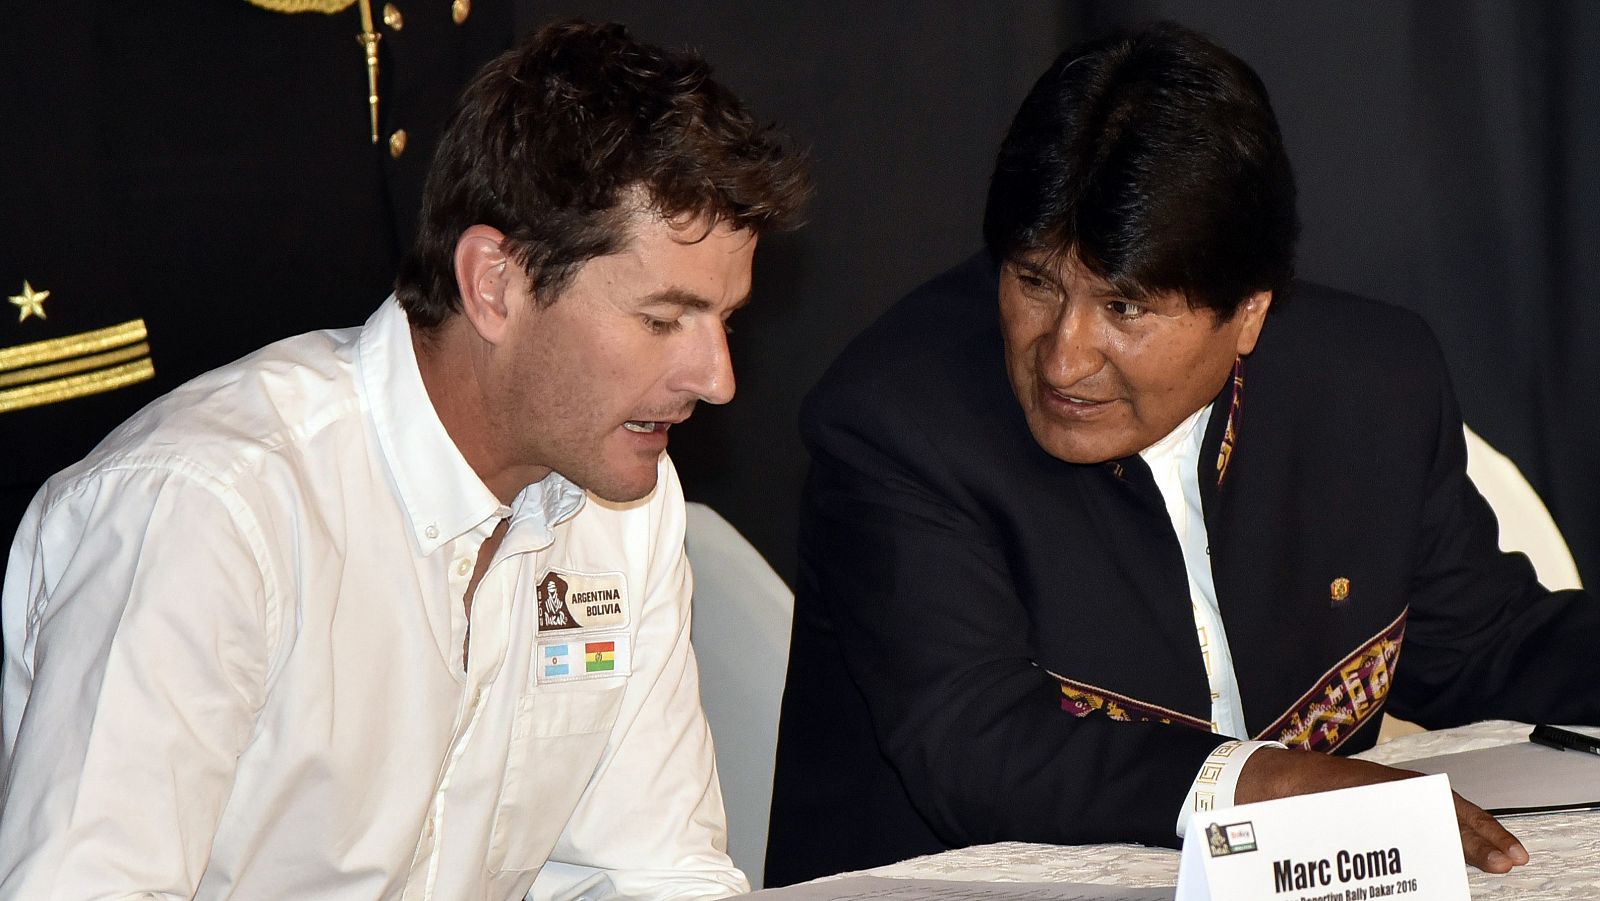 El español Marc Coma presenta el Rally Dakar junto al presidente de Bolivia, Evo Morales